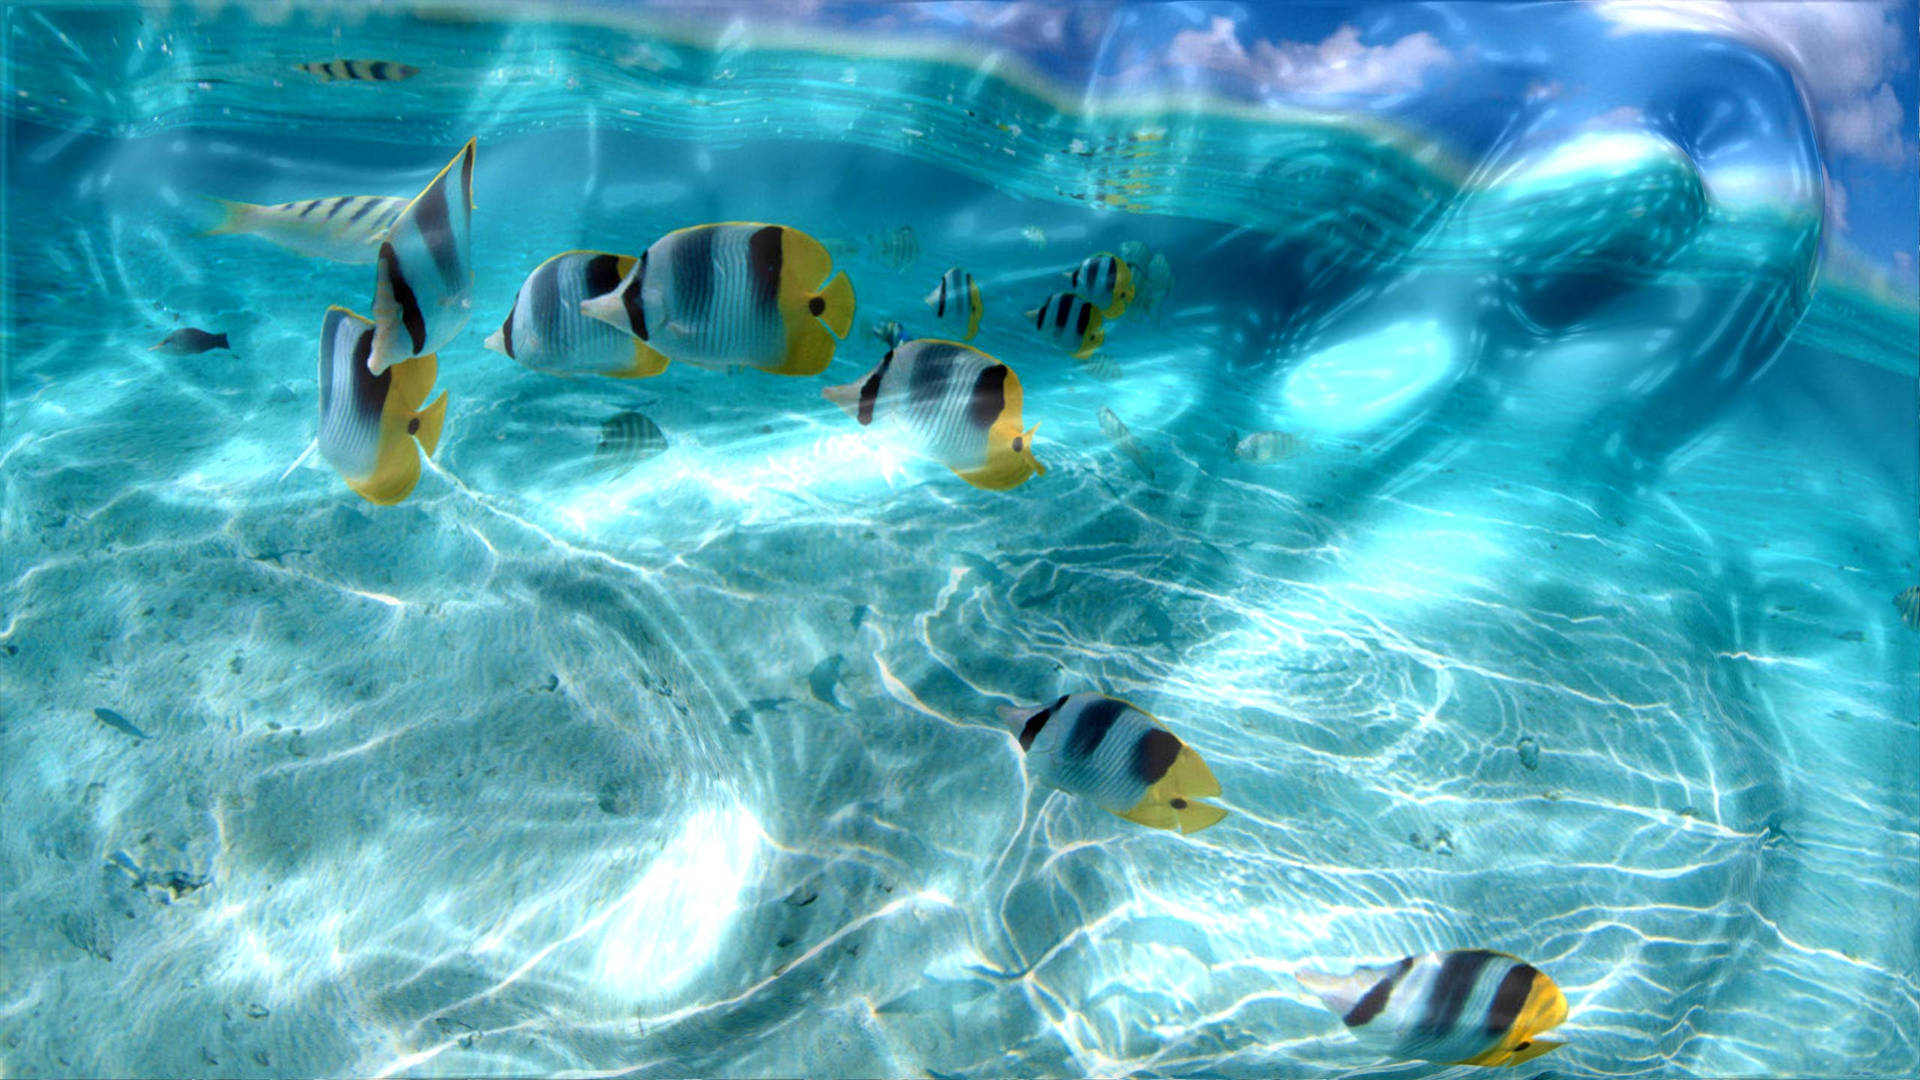 Inspirational Underwater Desktop Images  Desktop wallpaper Ocean  underwater Wallpaper